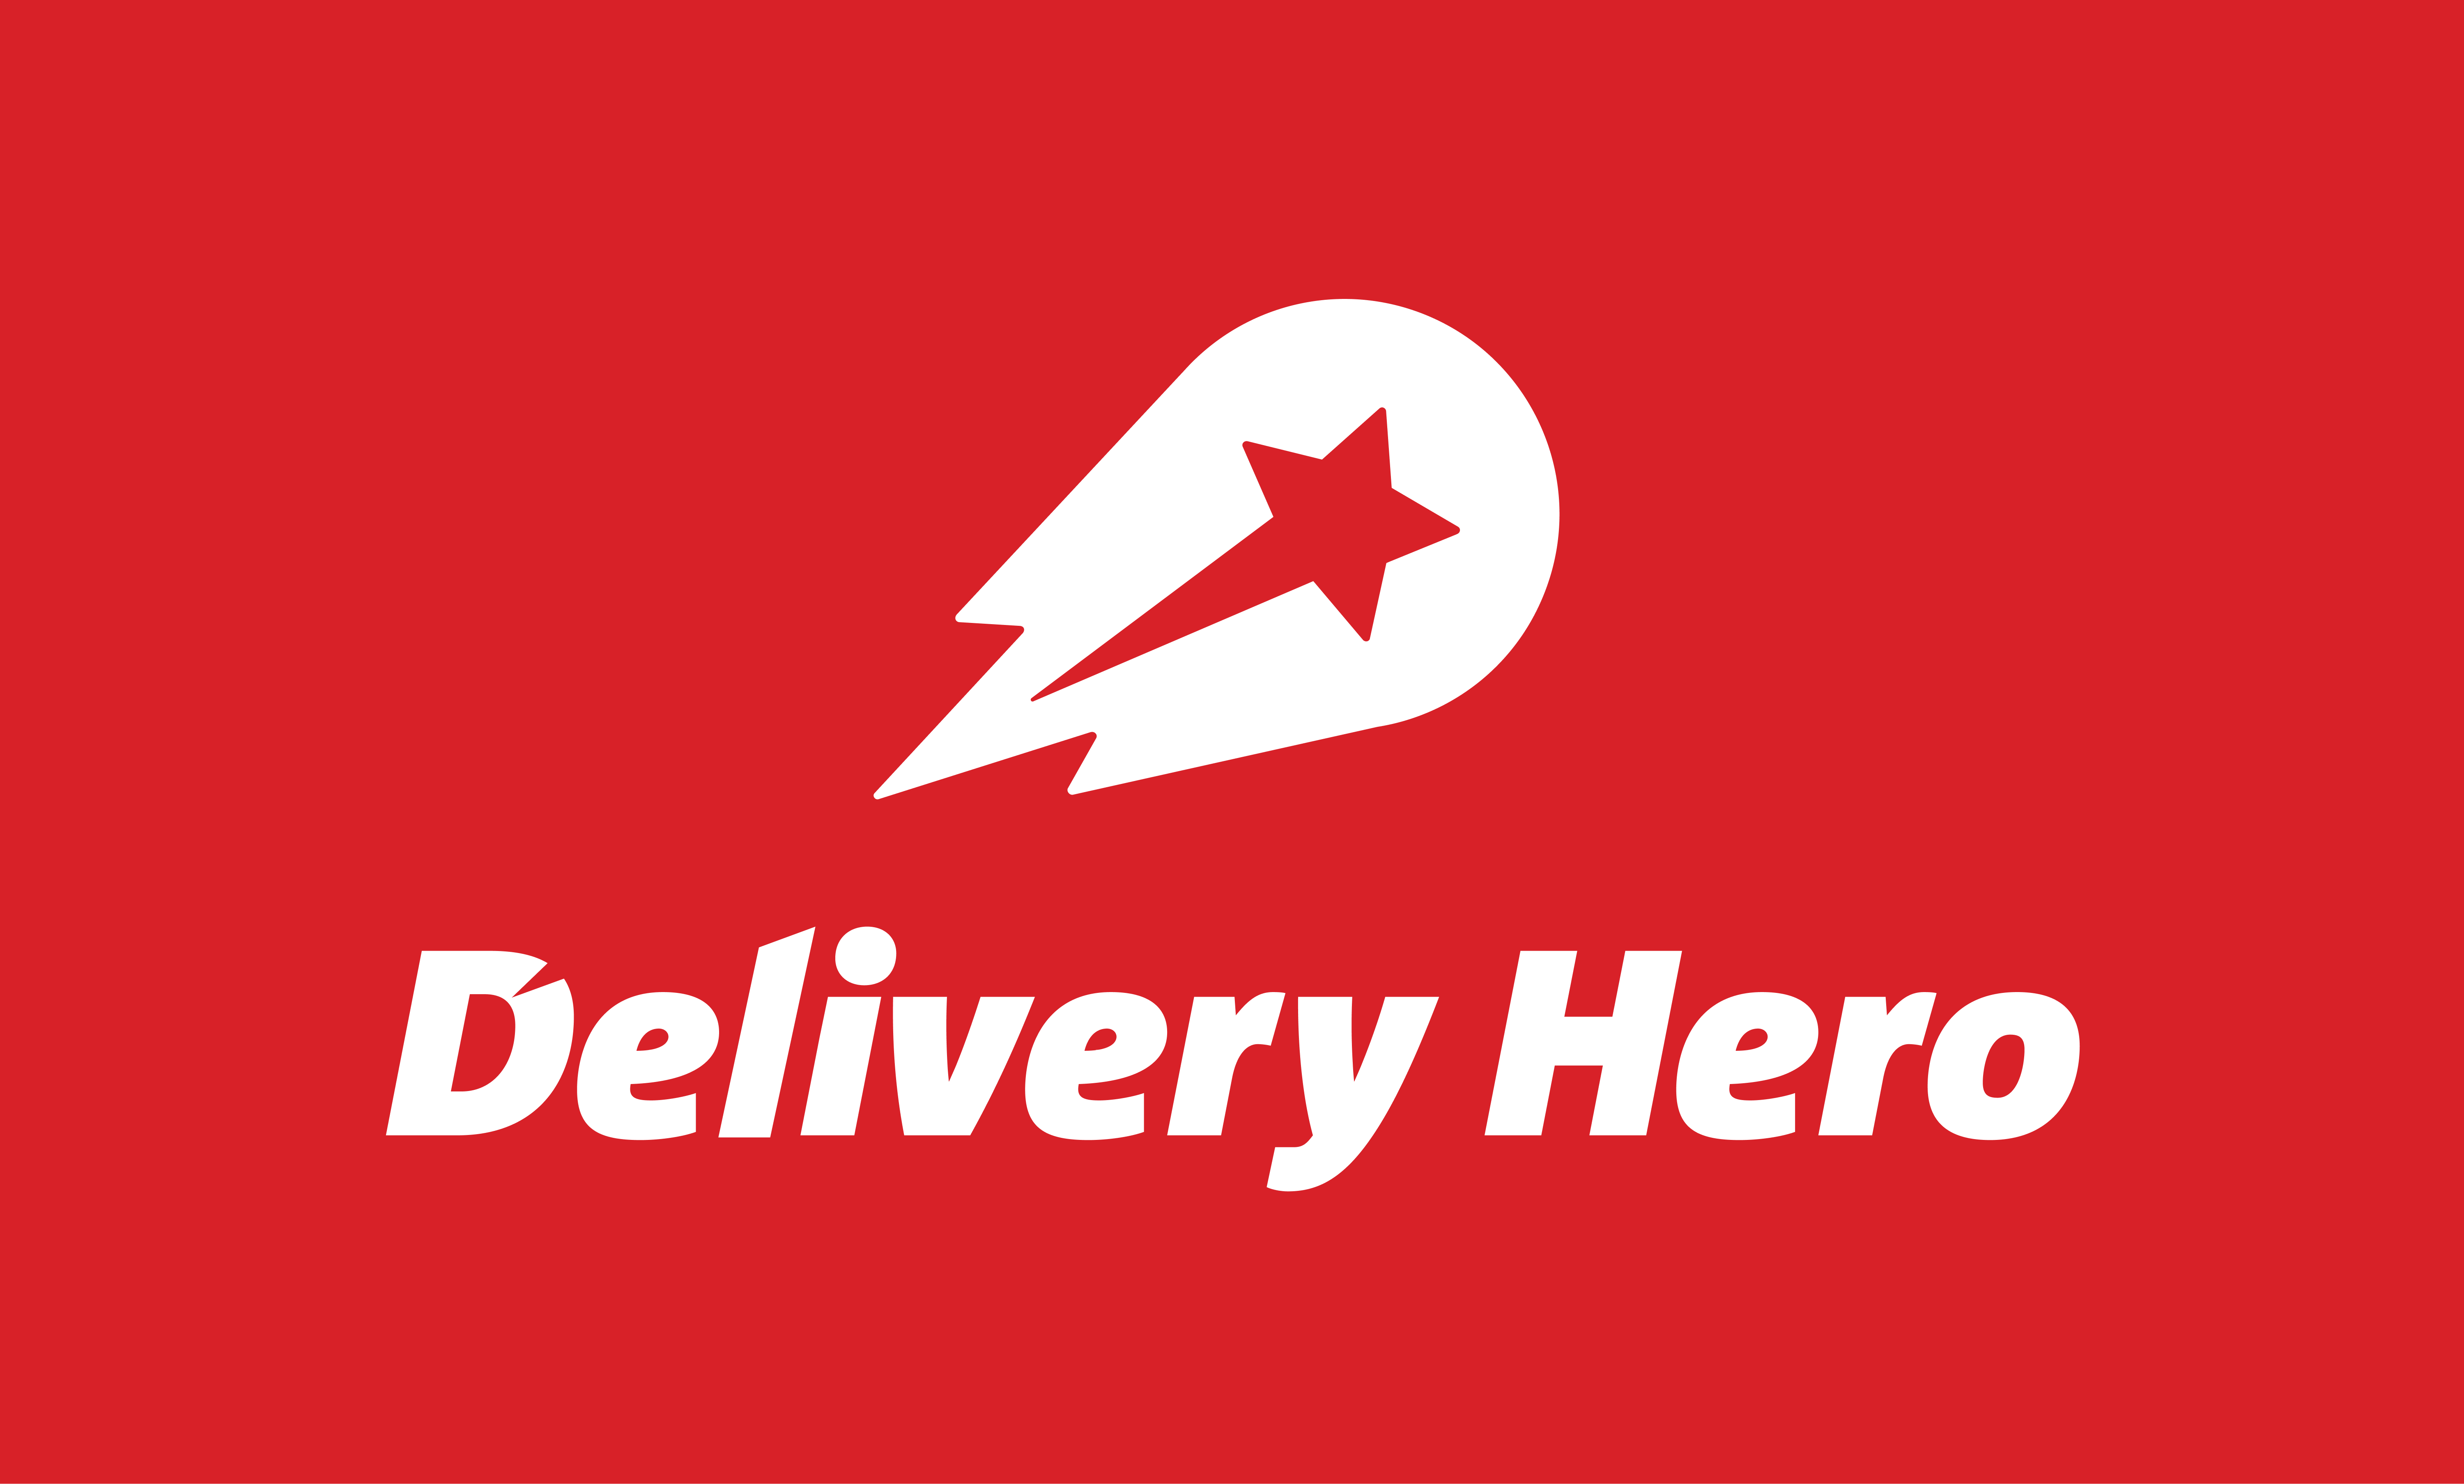 Delivery Hero logos là biểu tượng quen thuộc của nền tảng đặt hàng ăn uống: Delivery Hero. Thiết kế đơn giản nhưng đầy tính cách, tạo nên một phong cách riêng và dễ nhận biết. Nếu bạn là tín đồ của việc đặt hàng online, hãy tìm hiểu thêm về những ưu đãi của Delivery Hero bằng cách nhấp vào hình ảnh.